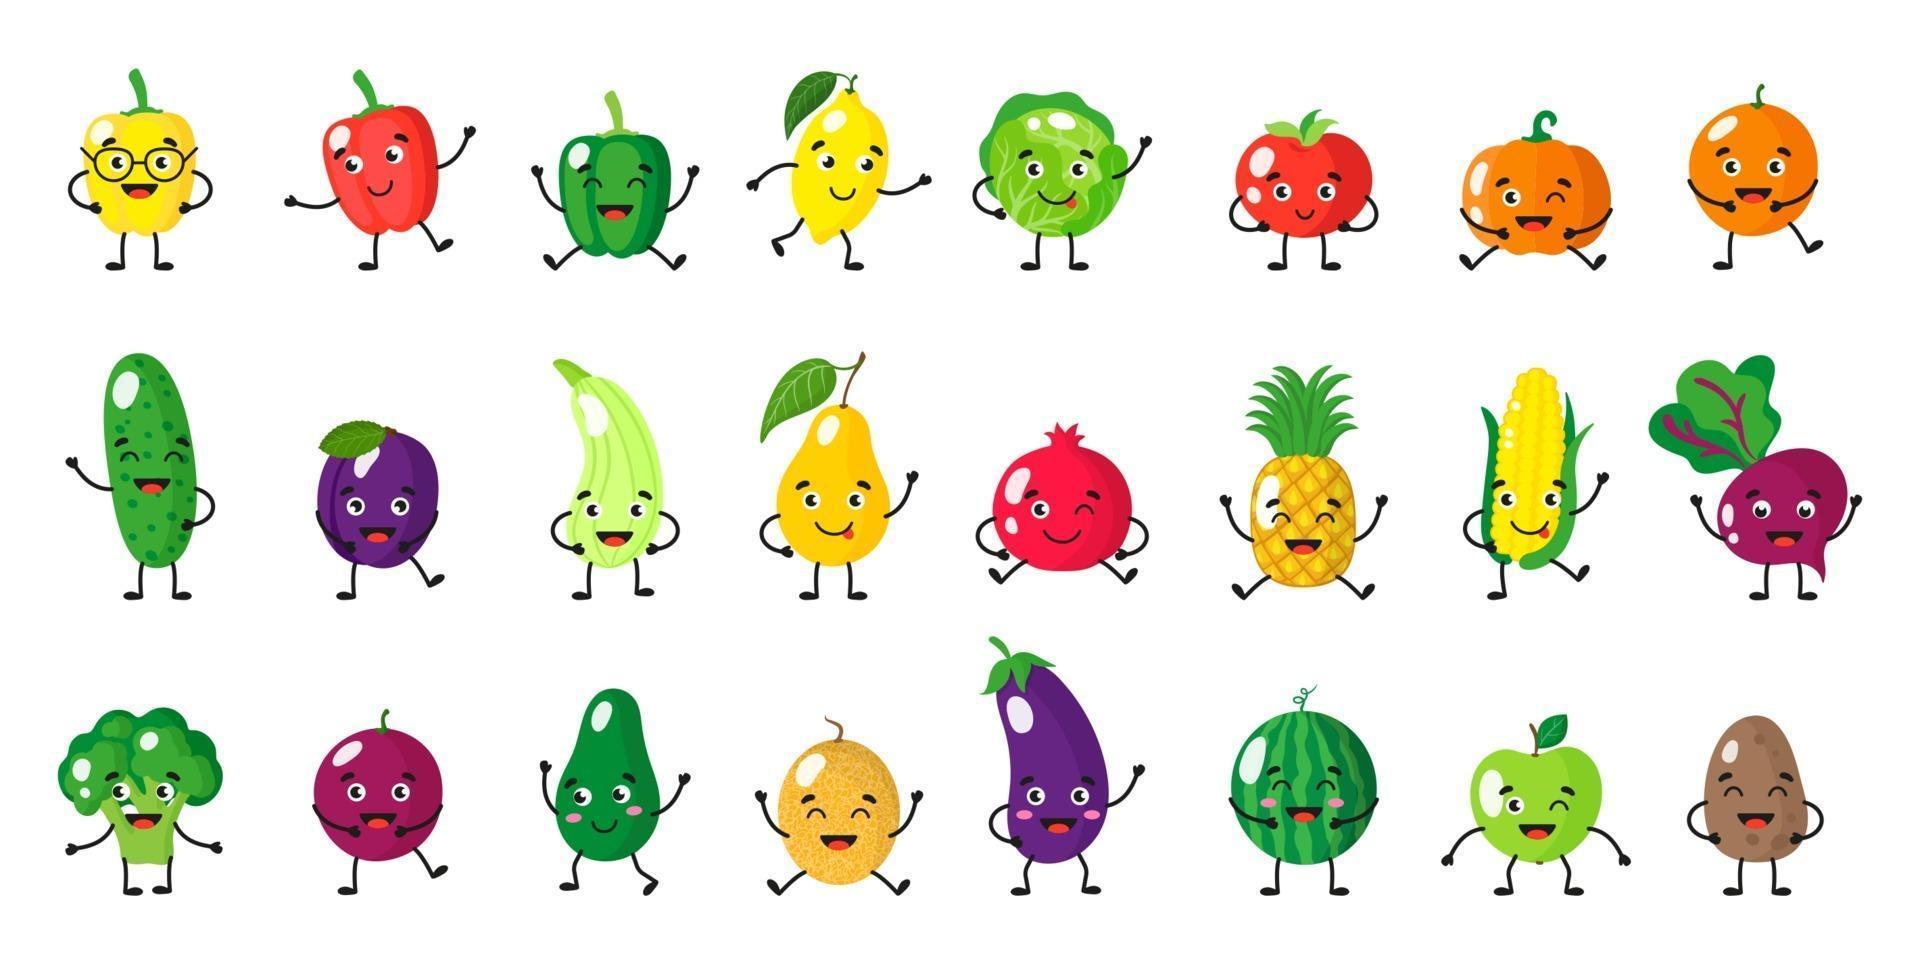 Vektorkarikatursatz von Obst- und Gemüsecharakteren mit verschiedenen Posen und Emotionen lokalisiert auf weißem Hintergrund vektor